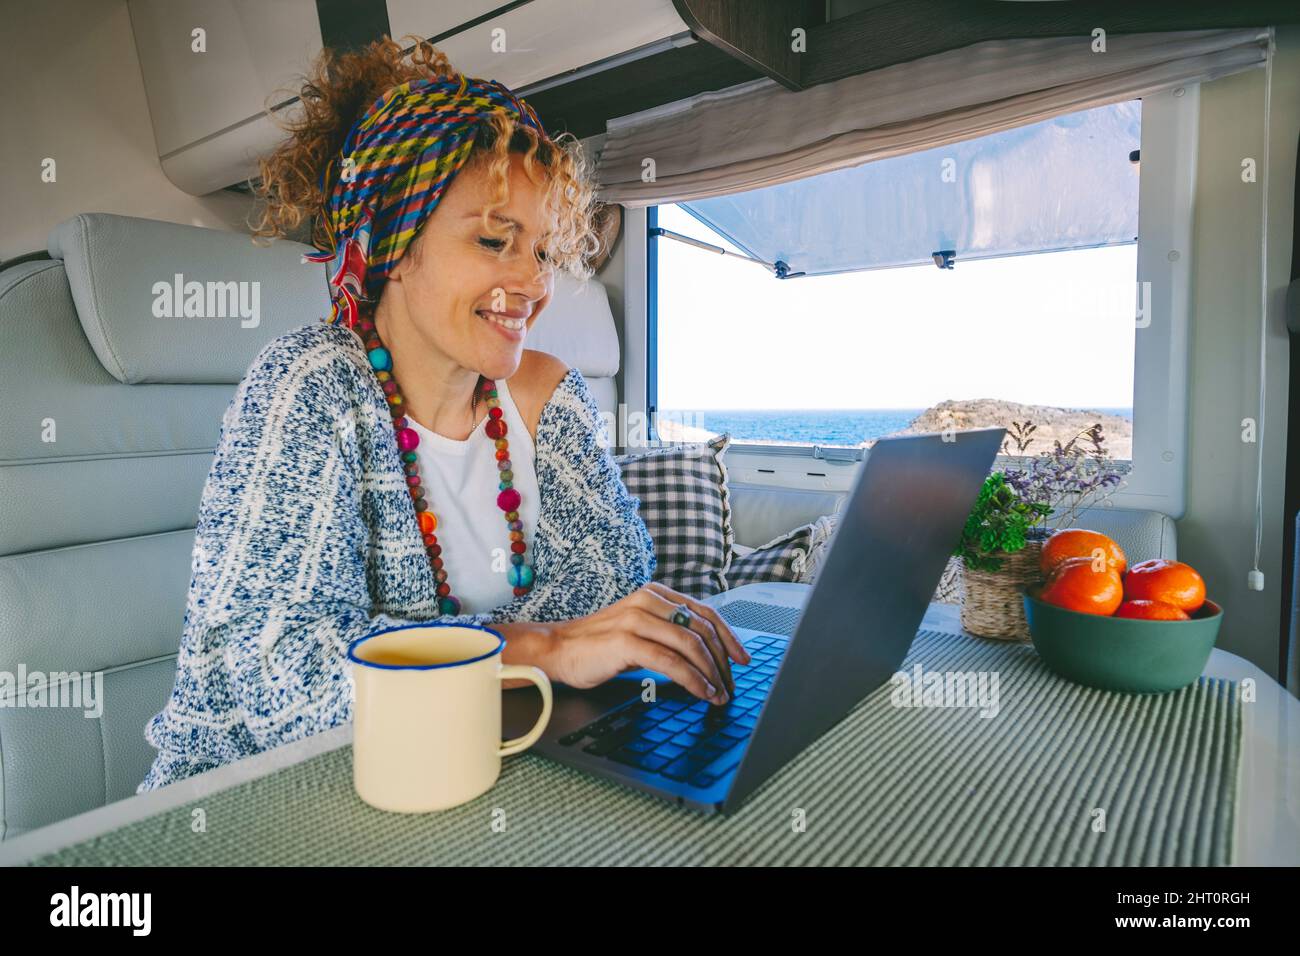 Giovane donna moderna lavora su un computer portatile all'interno di un camper rv con bella vista oceano all'esterno. Concetto di libertà di lavoro online e wor intelligente Foto Stock